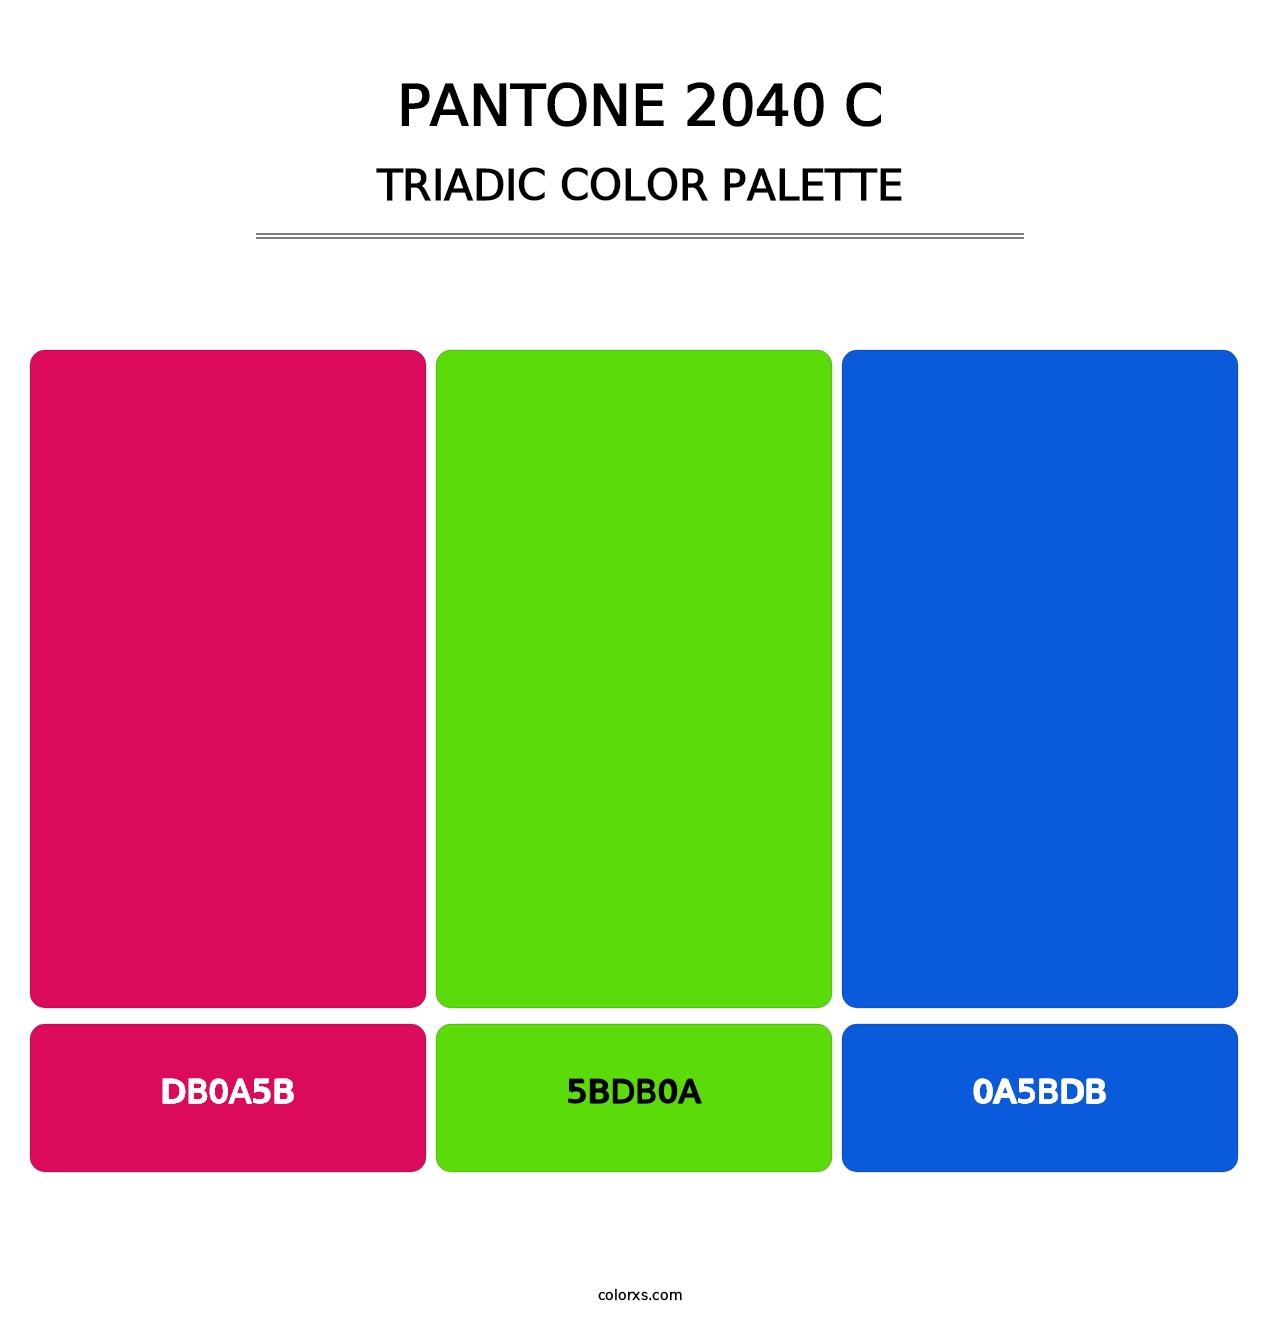 PANTONE 2040 C - Triadic Color Palette